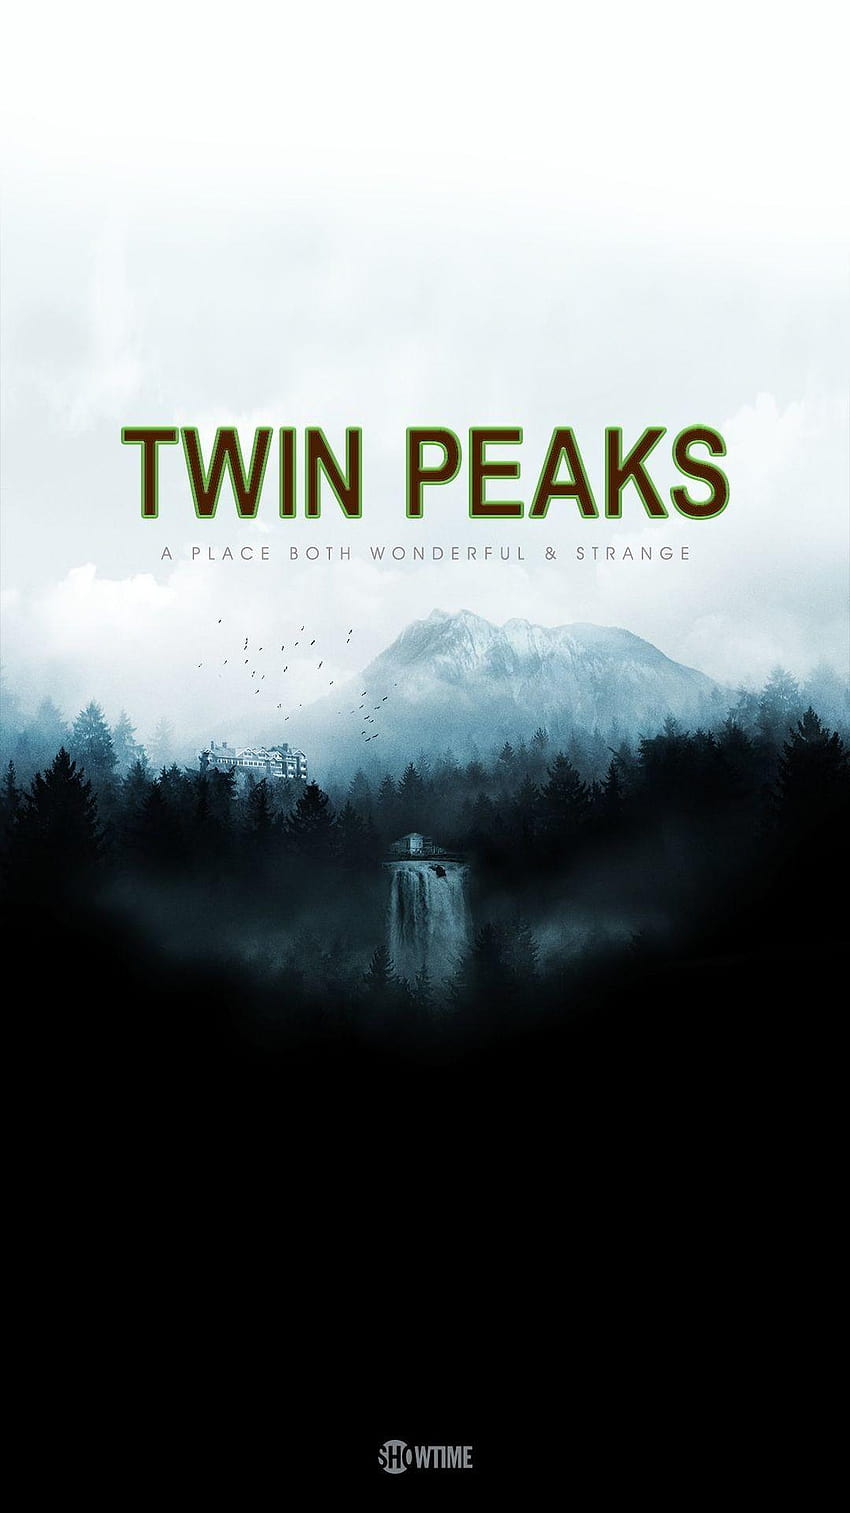 8 Twin Peaks, twin peaks iphone HD phone wallpaper | Pxfuel